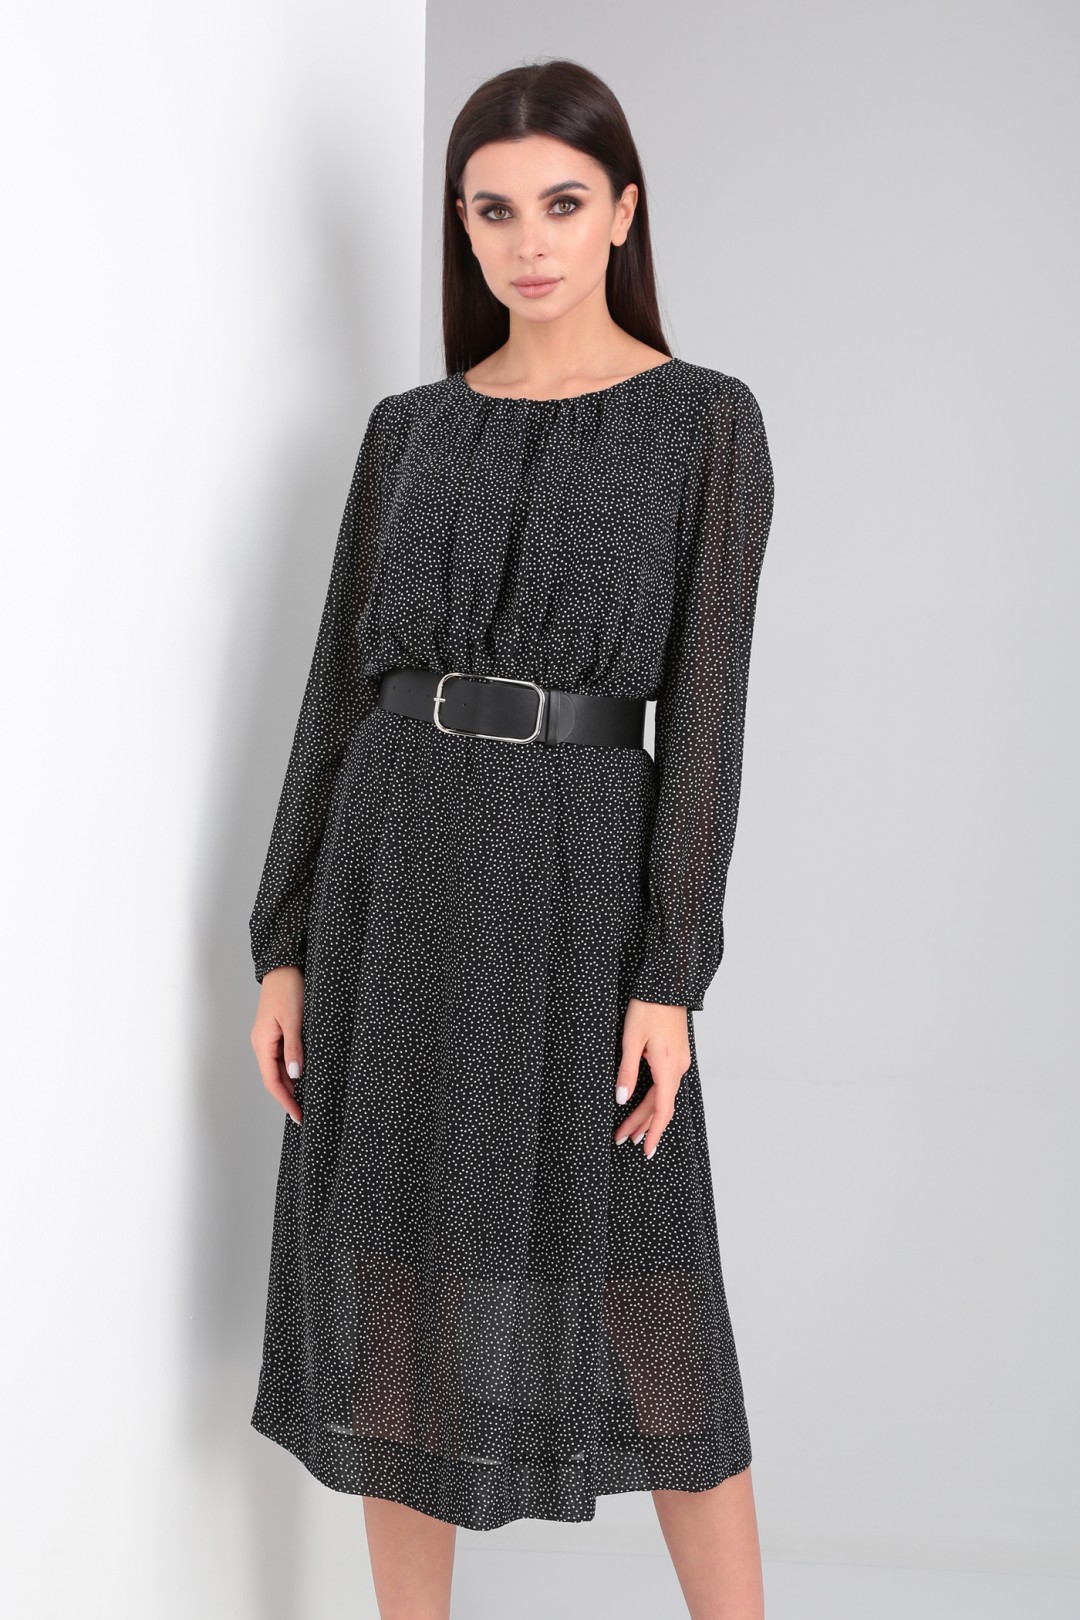 Платье Viola Style 0995 черный в горошек